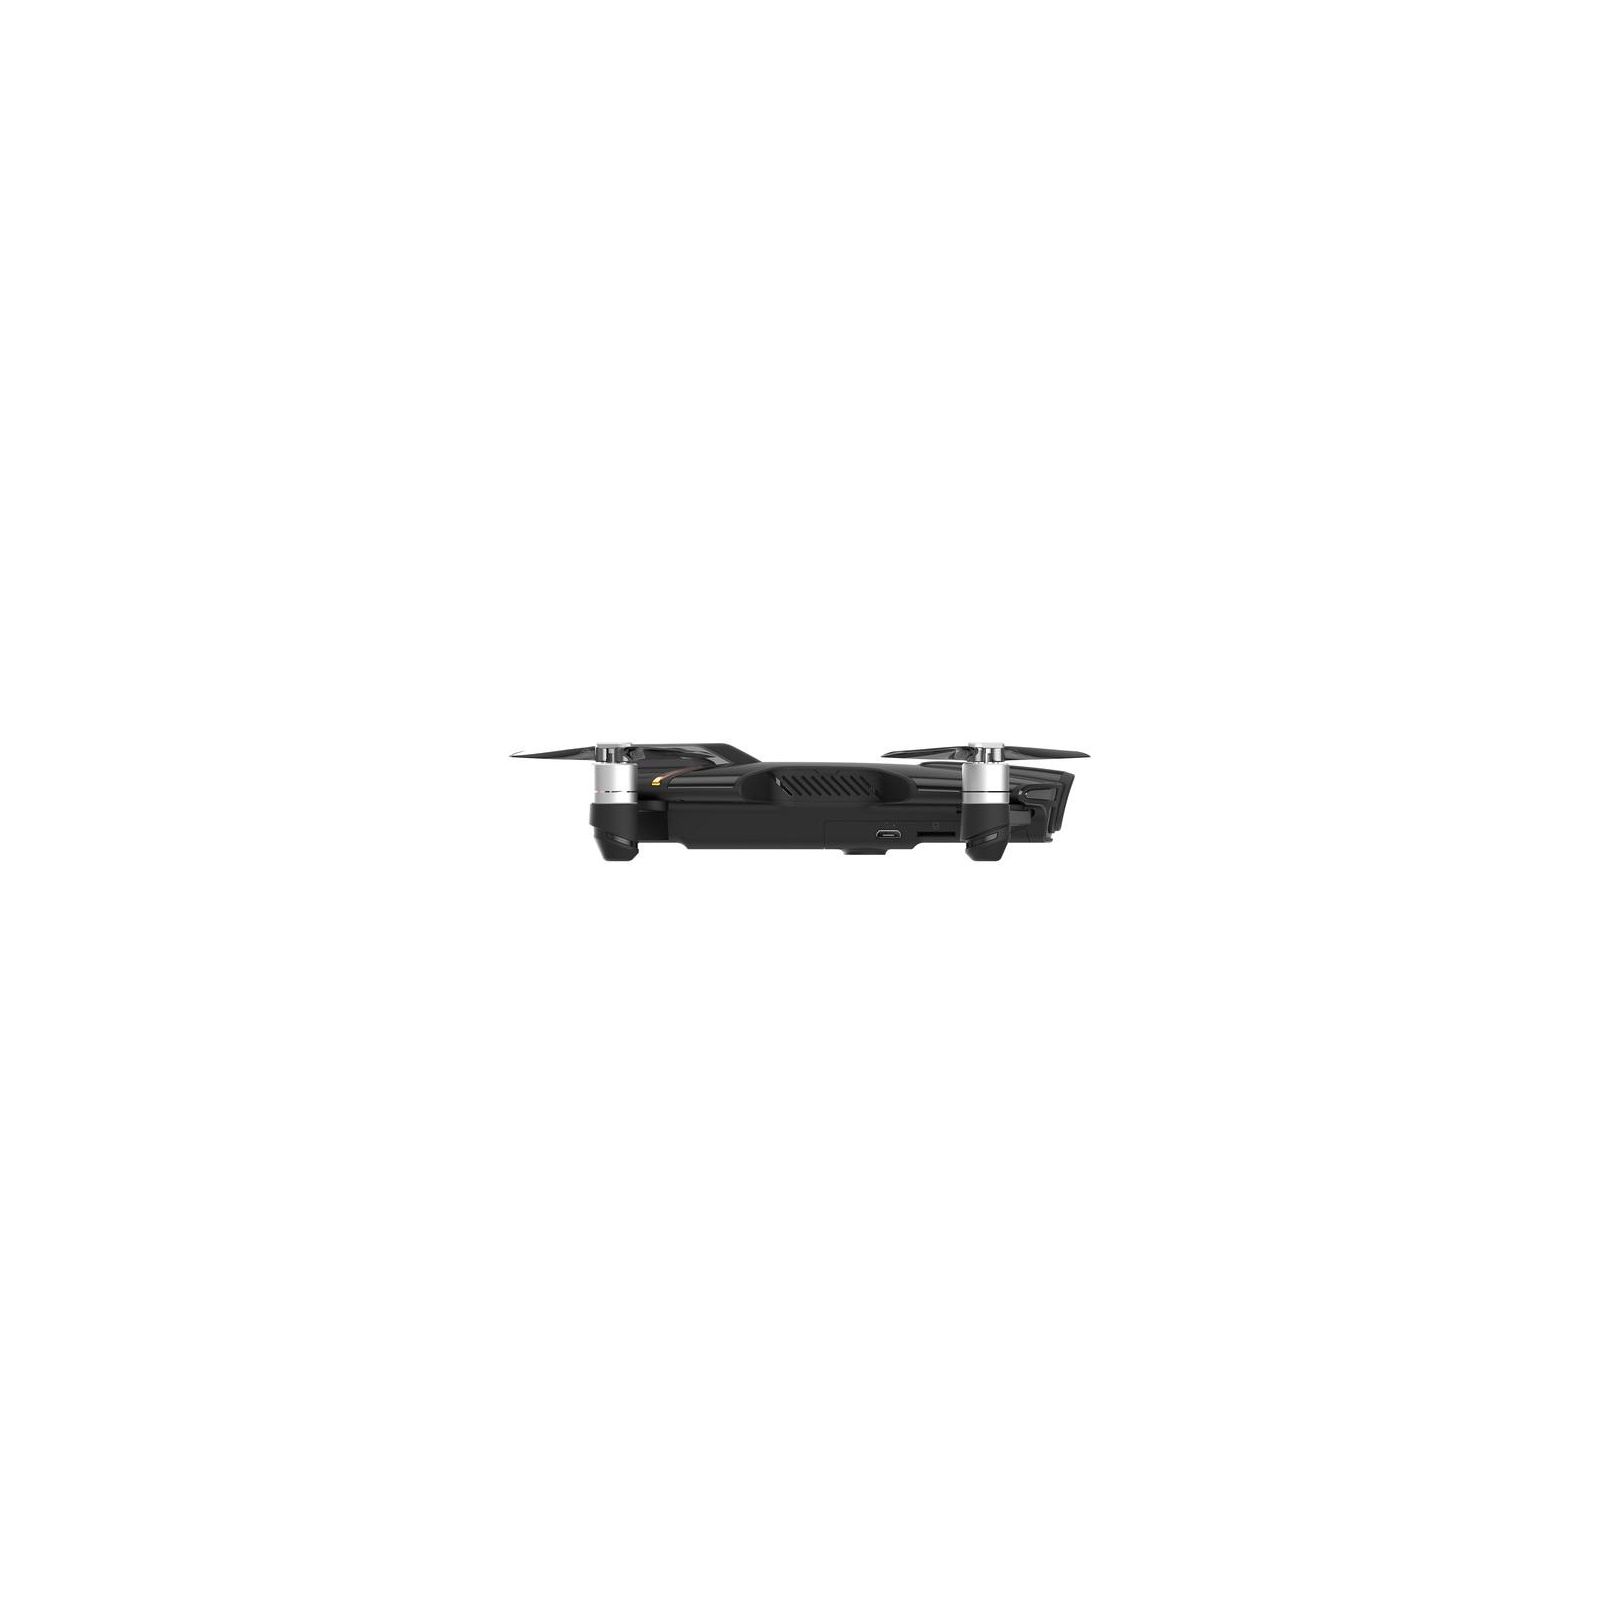 Квадрокоптер Wingsland S6 GPS 4K Pocket Drone-2 Batteries Black зображення 4